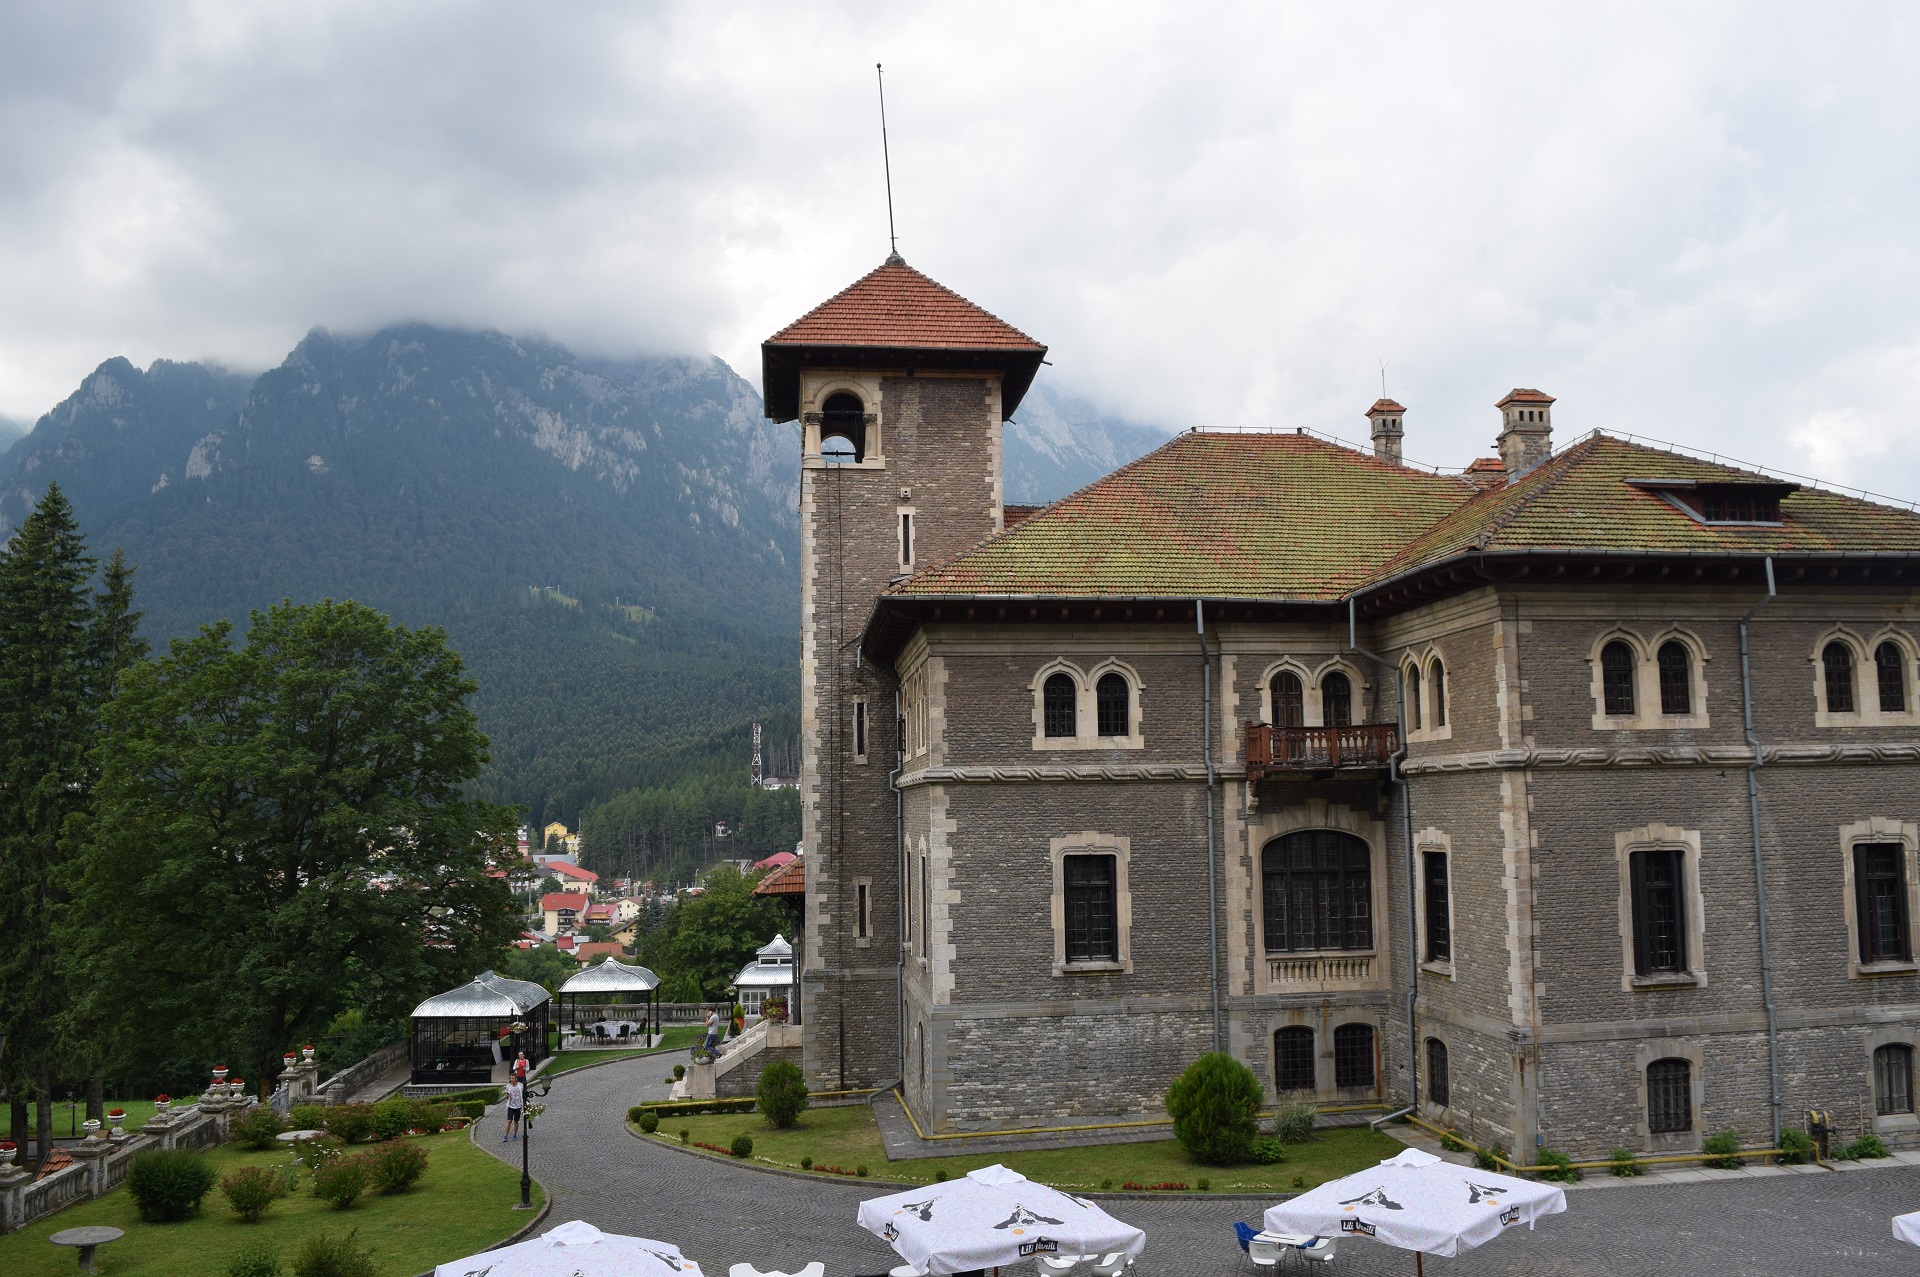 Chateau Cantacuzino